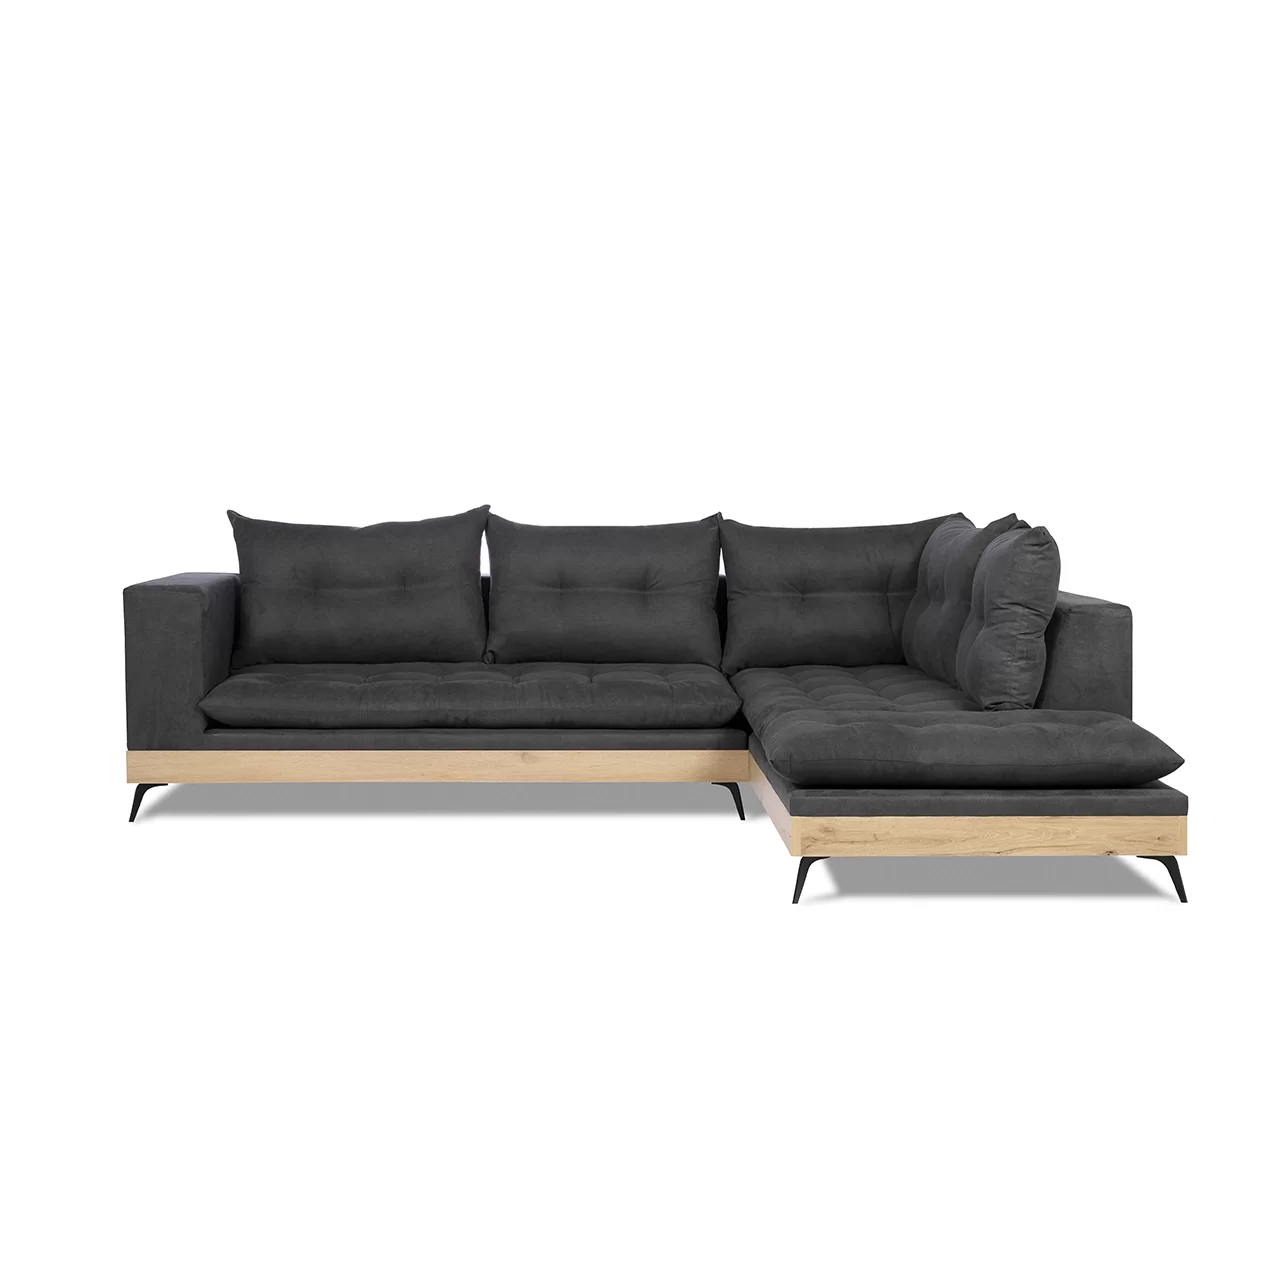 μαύρος γωνιακός καναπές με ξύλινες λεπτομέρειες